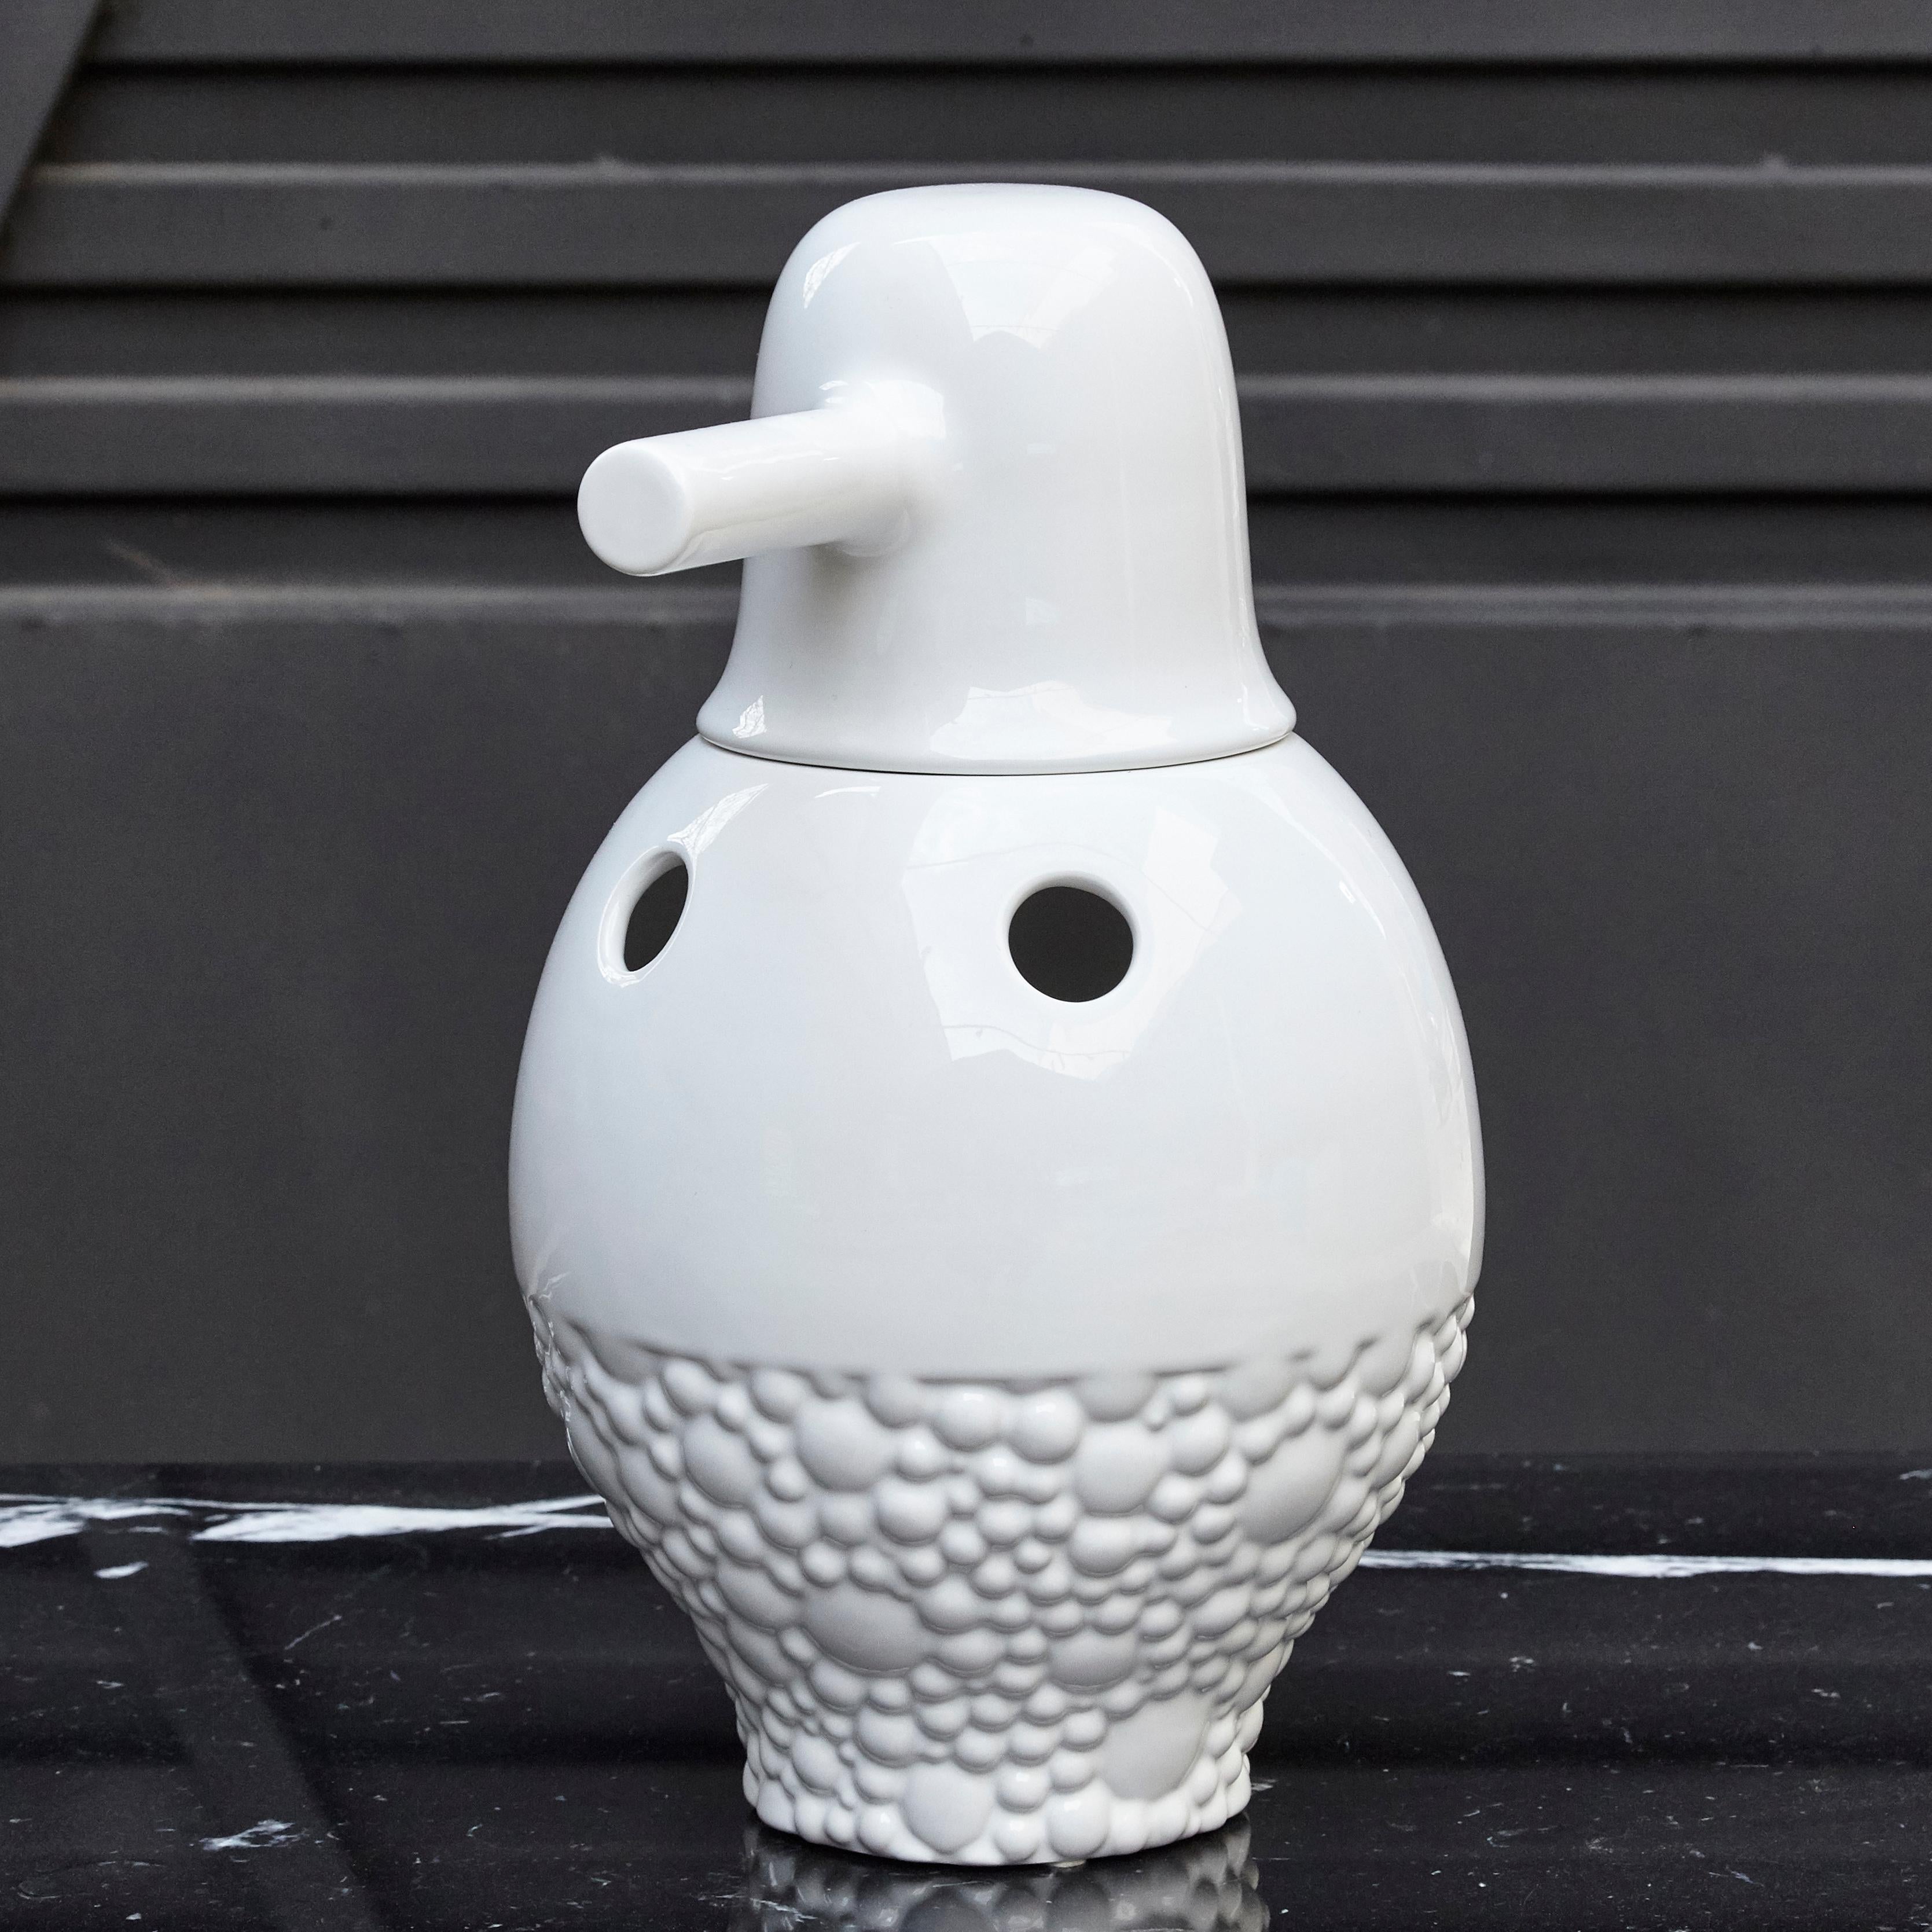 Spanish Jaime Hayon Contemporary Glazed Stoneware Showtime White Gold Vase Number 1